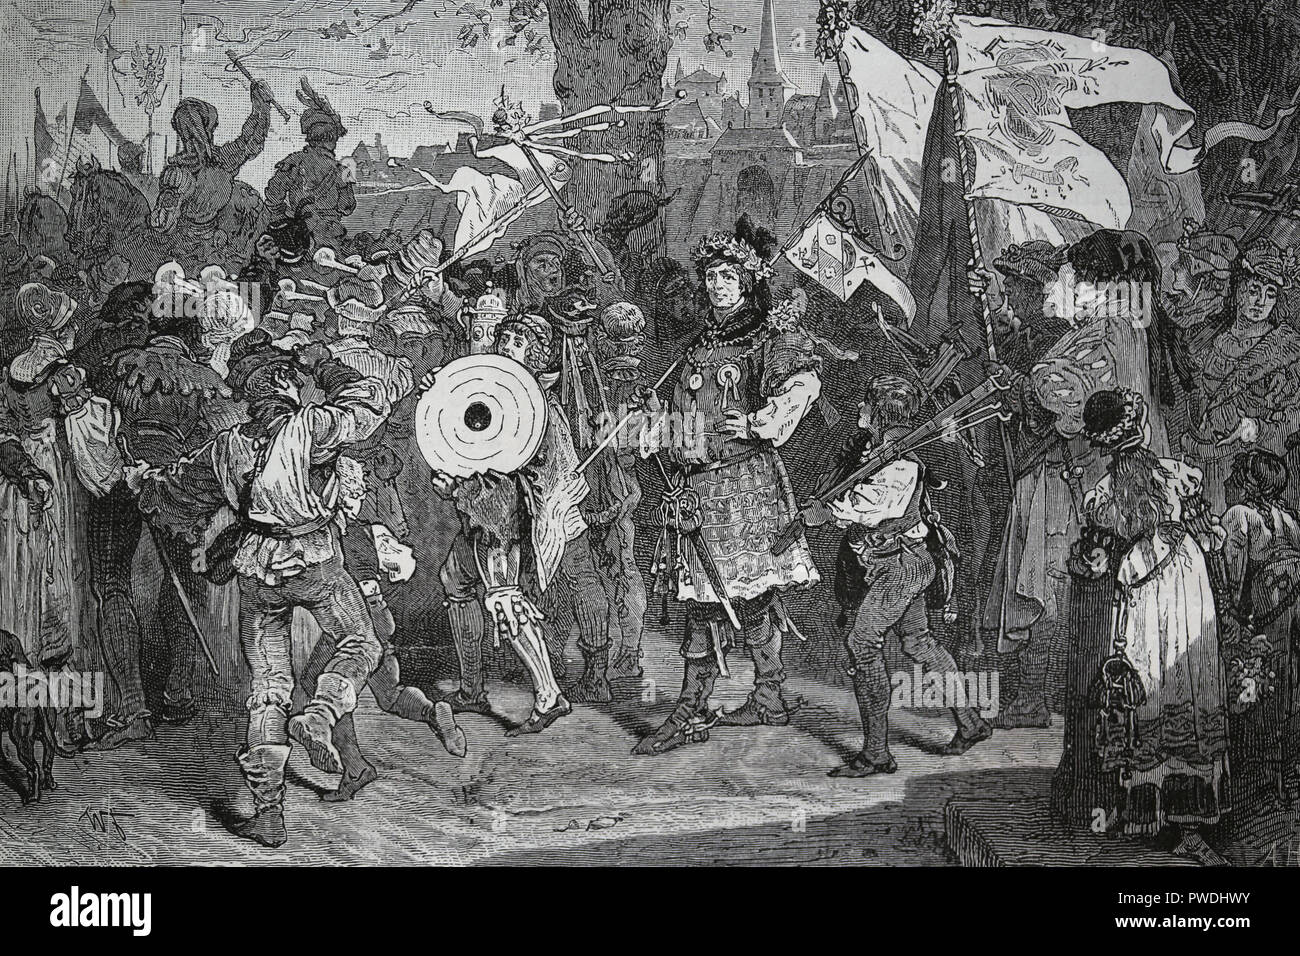 Germania. Medioevo. Tiro al bersaglio. Celebrazione annuale. Engravin dalla Germania, 1882. Foto Stock